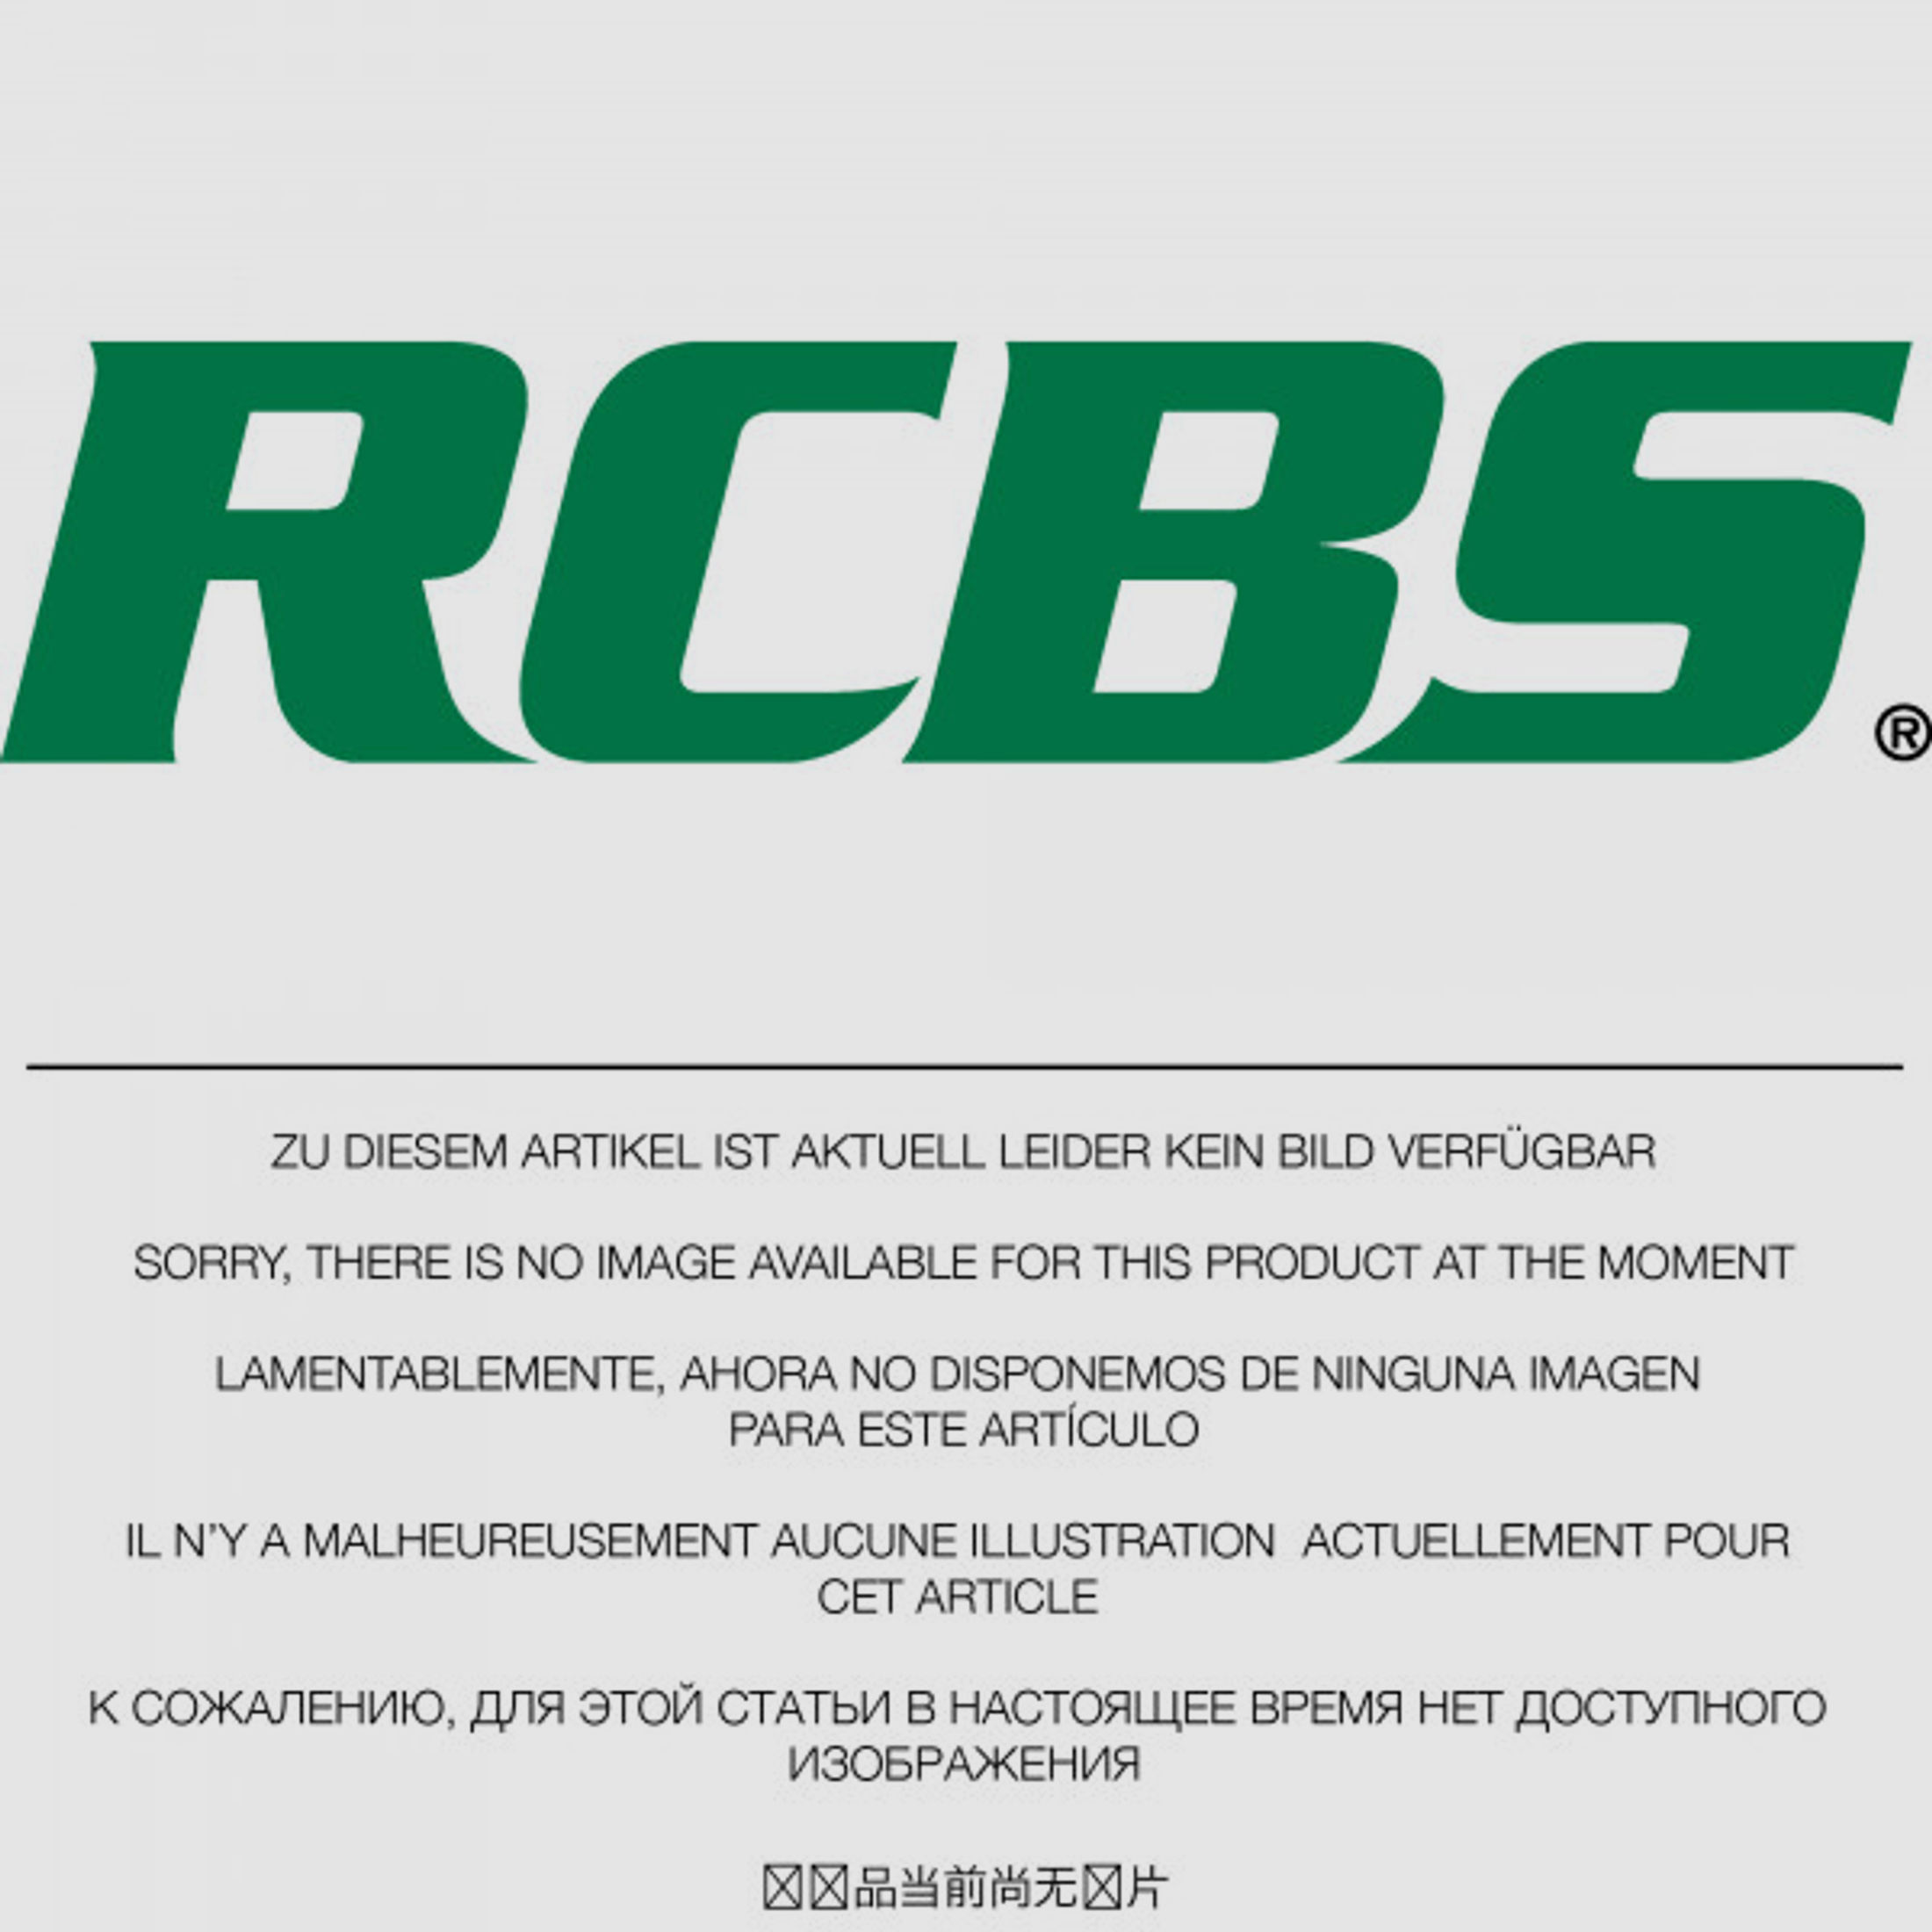 RCBS Lube-A-Matic Top Punch Geschoss Setzstempel Nr. 607 #85607